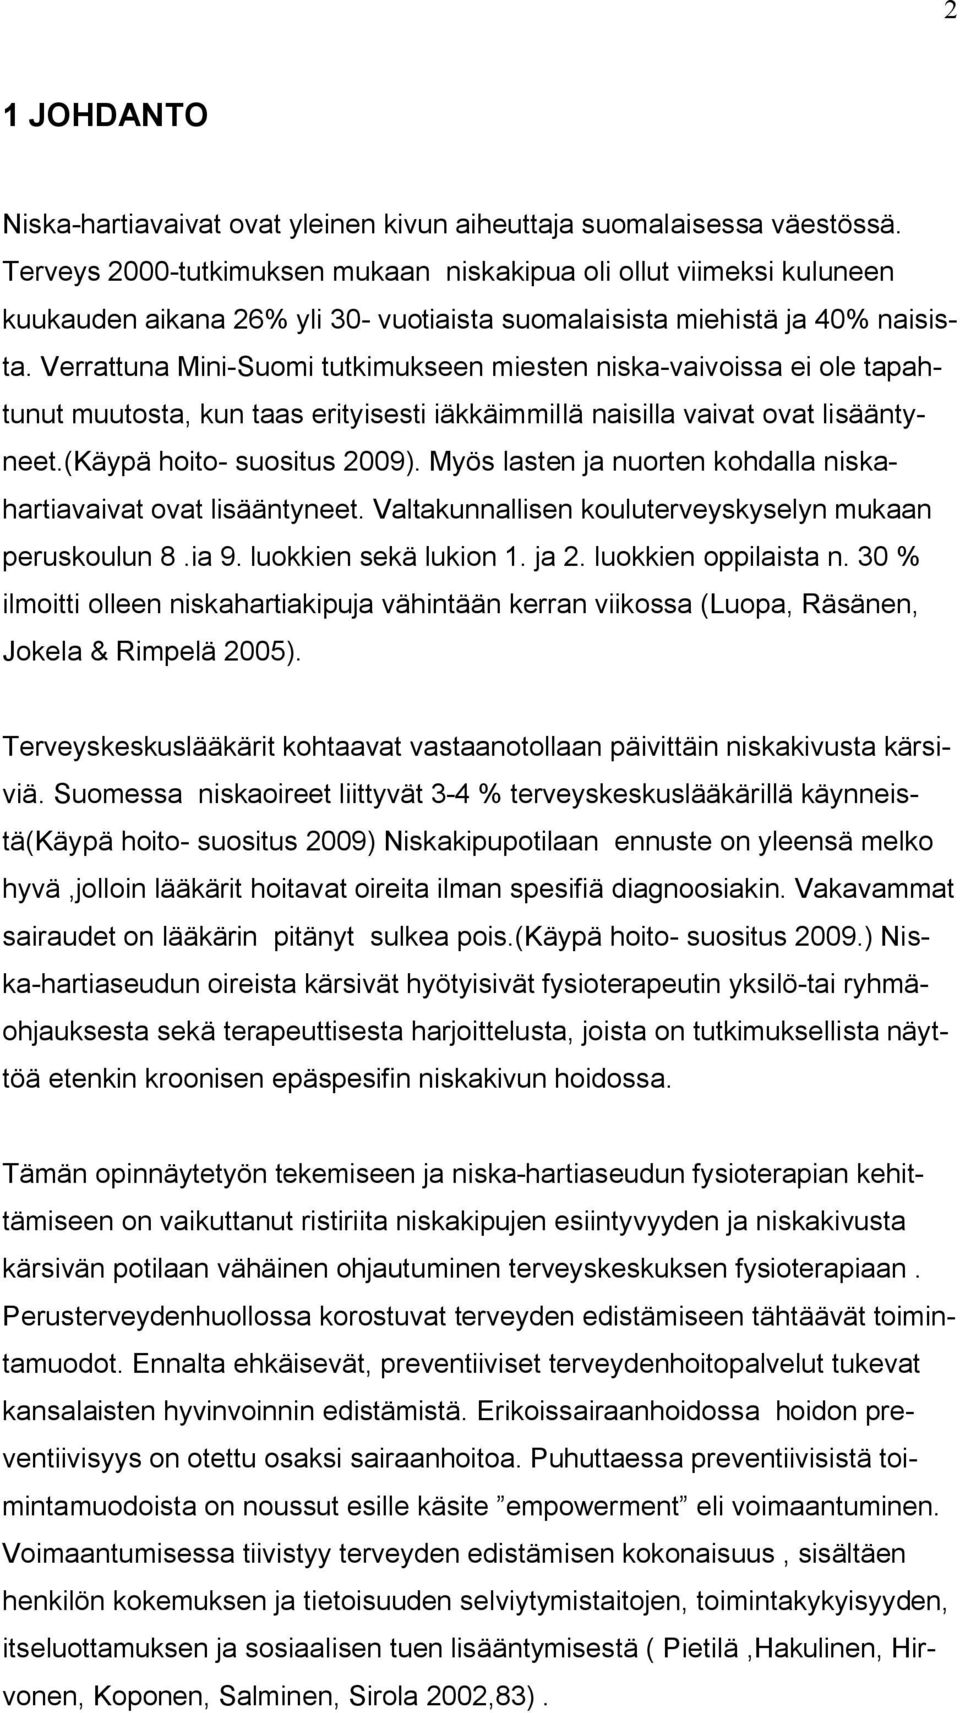 Verrattuna Mini-Suomi tutkimukseen miesten niska-vaivoissa ei ole tapahtunut muutosta, kun taas erityisesti iäkkäimmillä naisilla vaivat ovat lisääntyneet.(käypä hoito- suositus 2009).